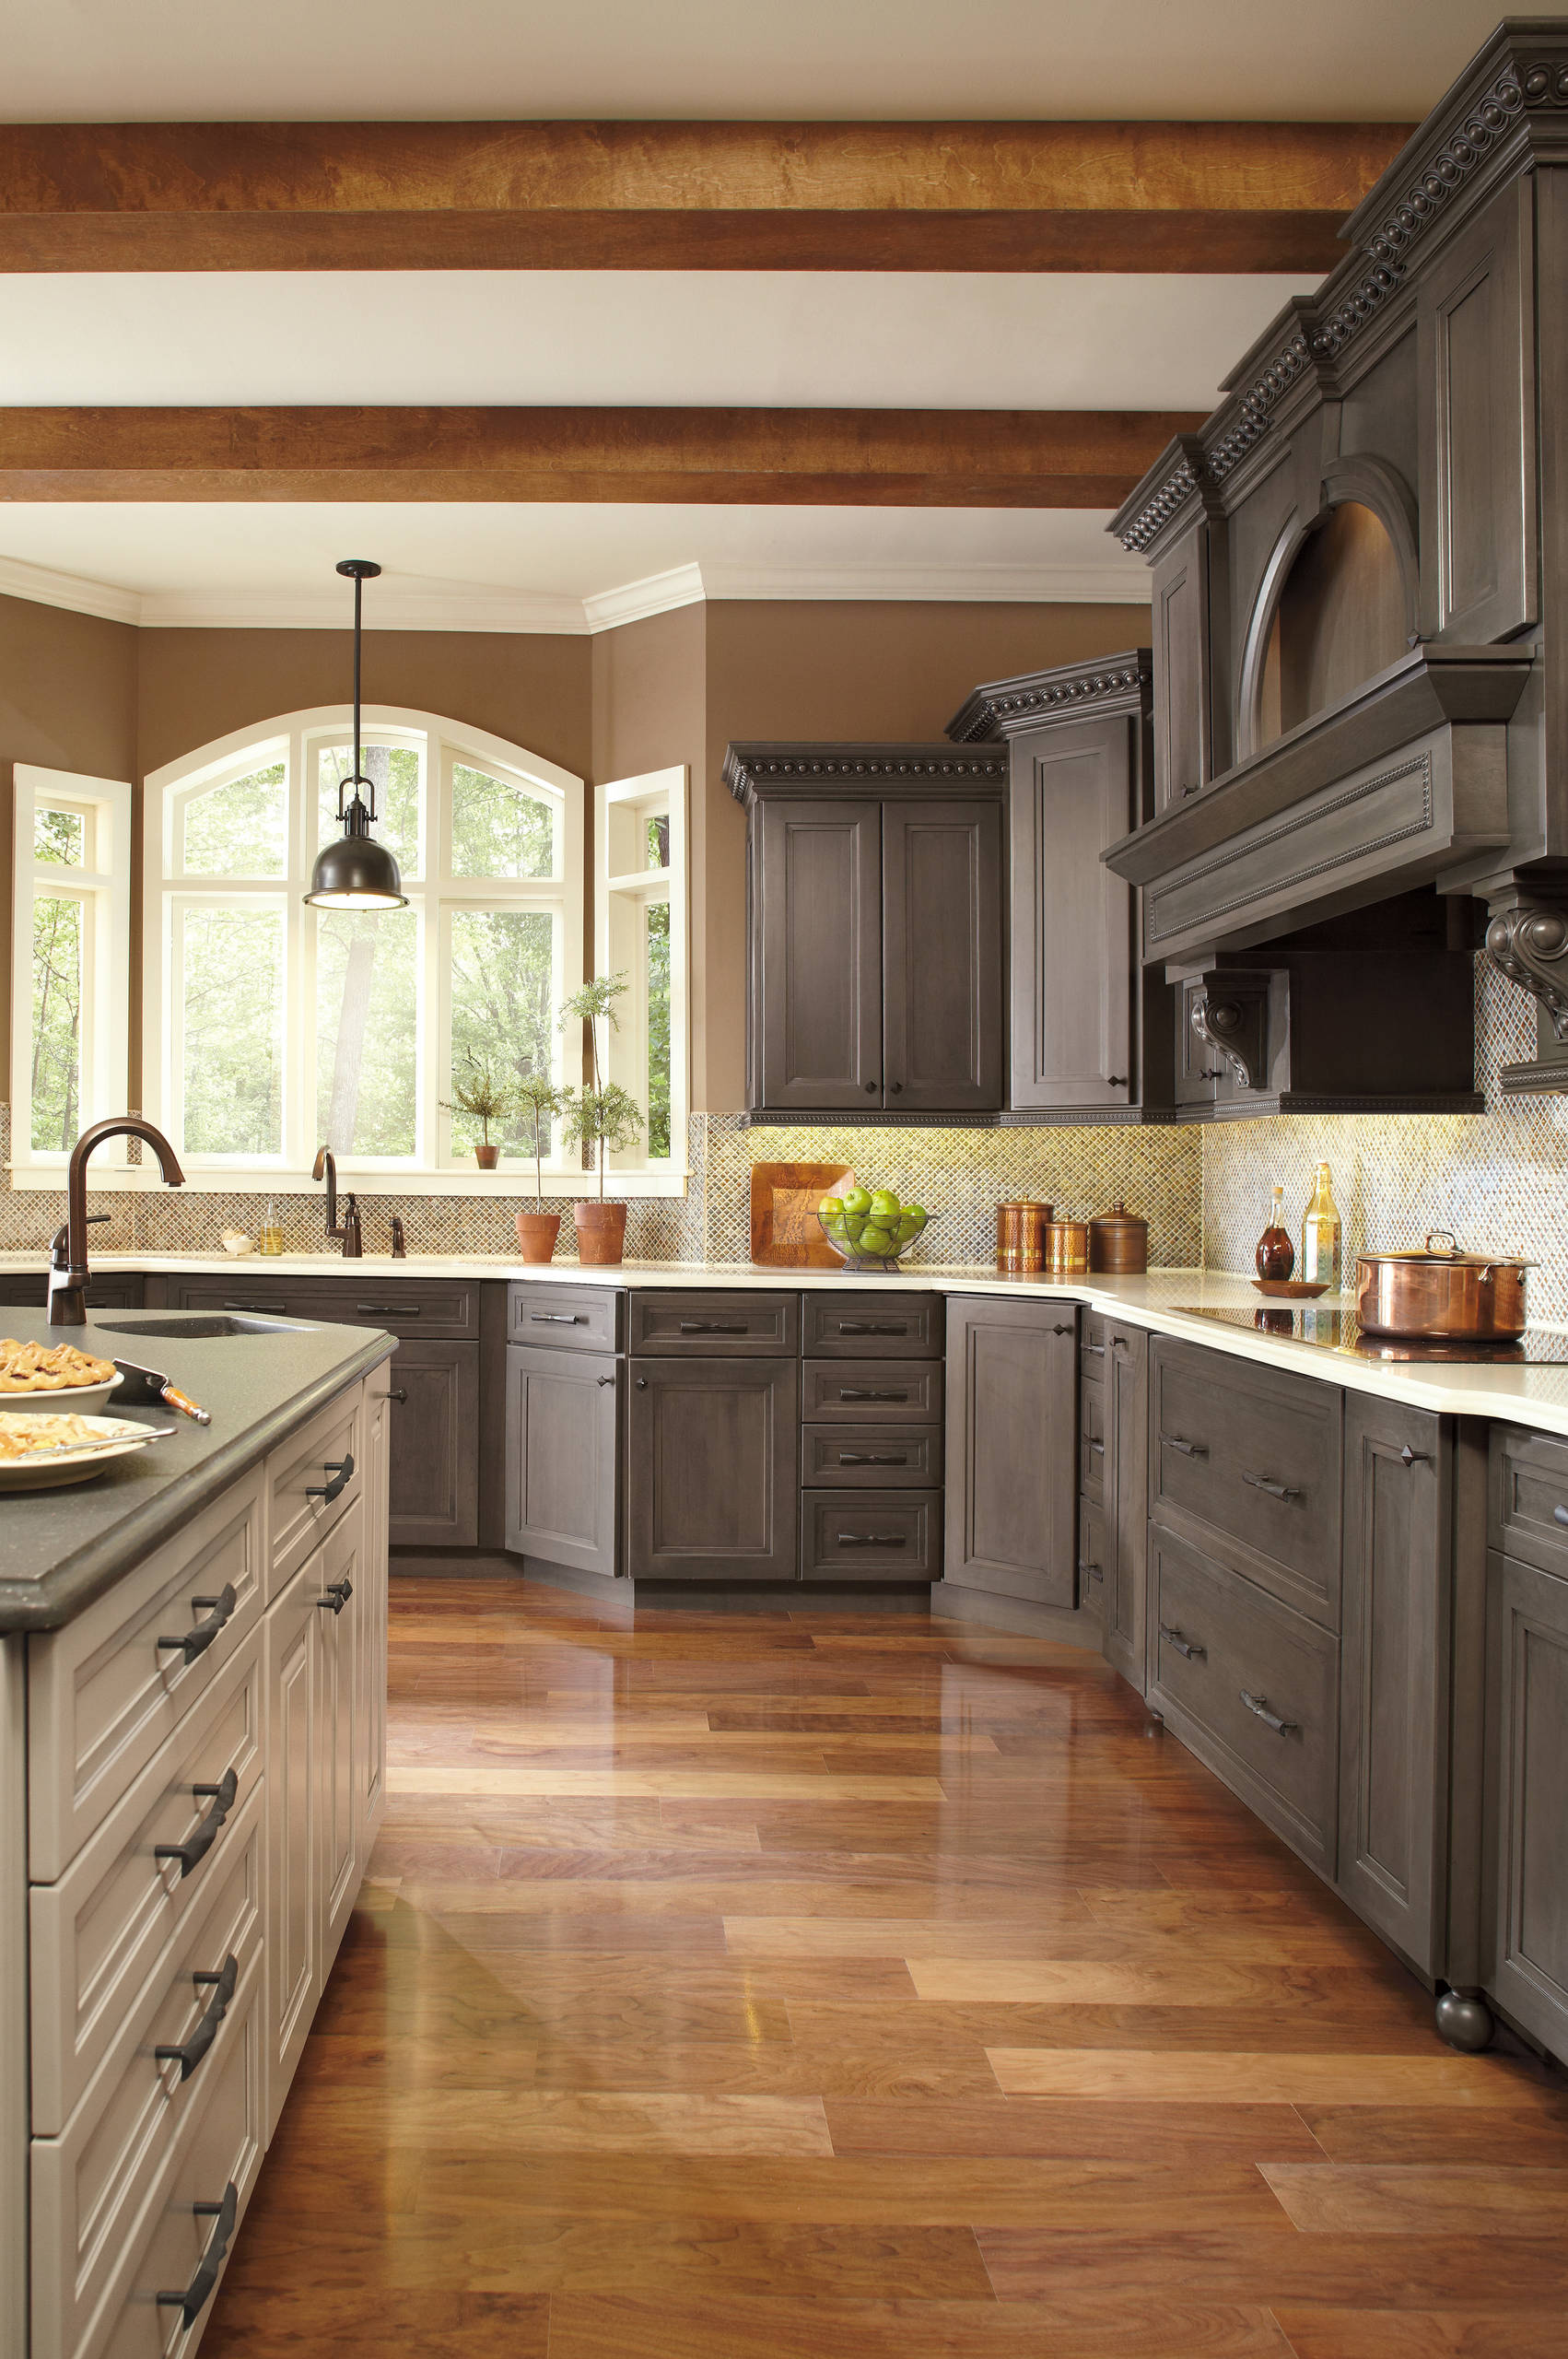 Хороший вопрос: С чем сочетать по цвету кухонную столешницу идеи для дома,интерьер и дизайн